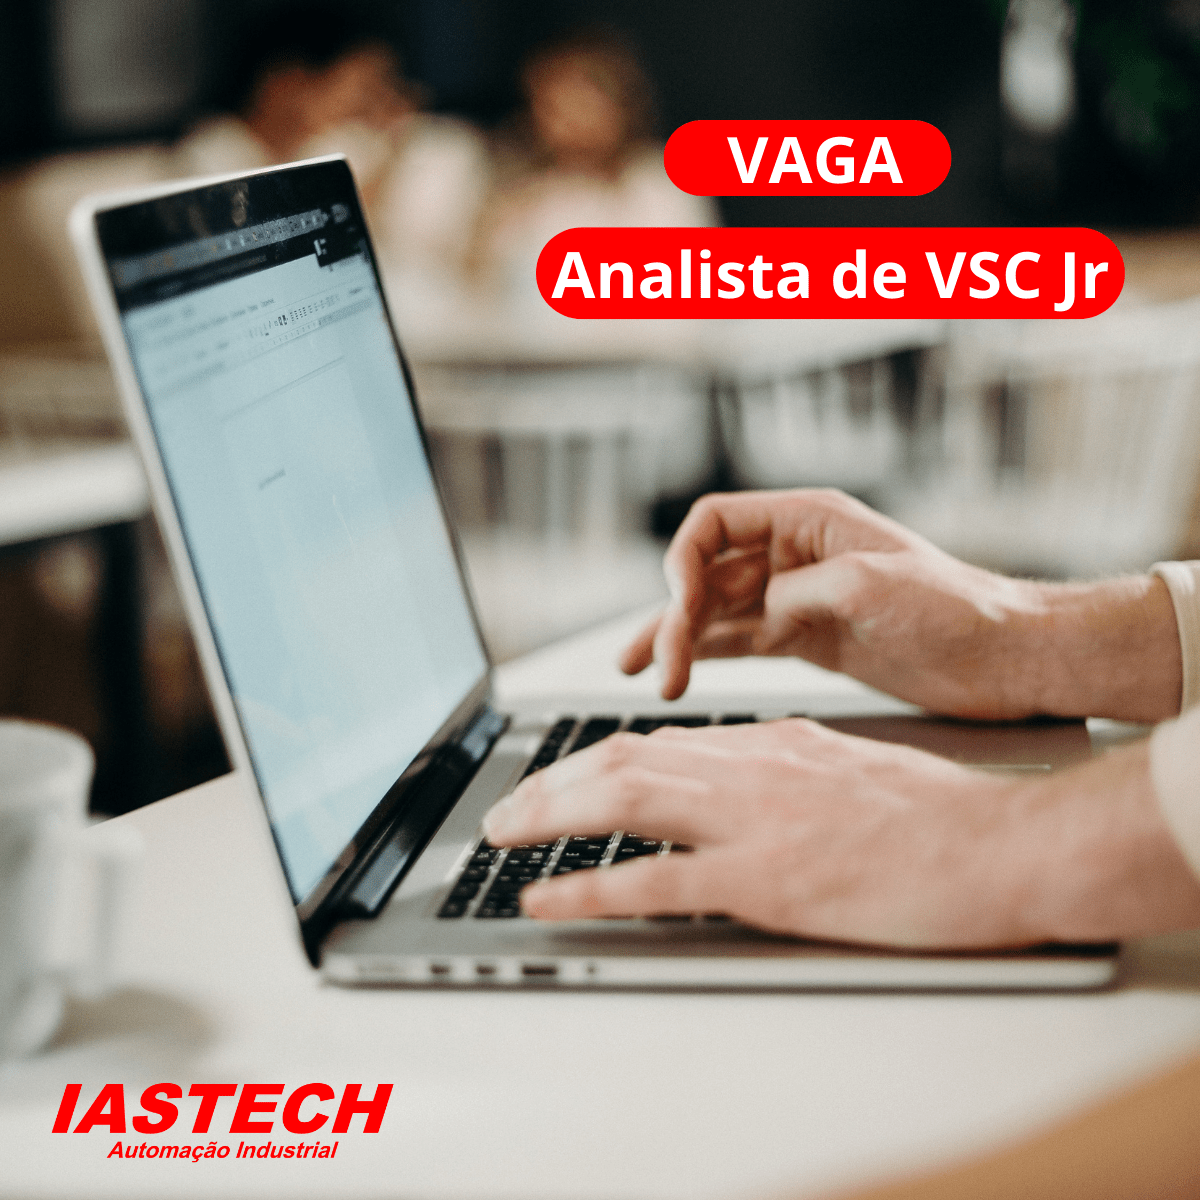 IASTECH busca Analista de VSC (Validação de Sistemas Computadorizados) Jr